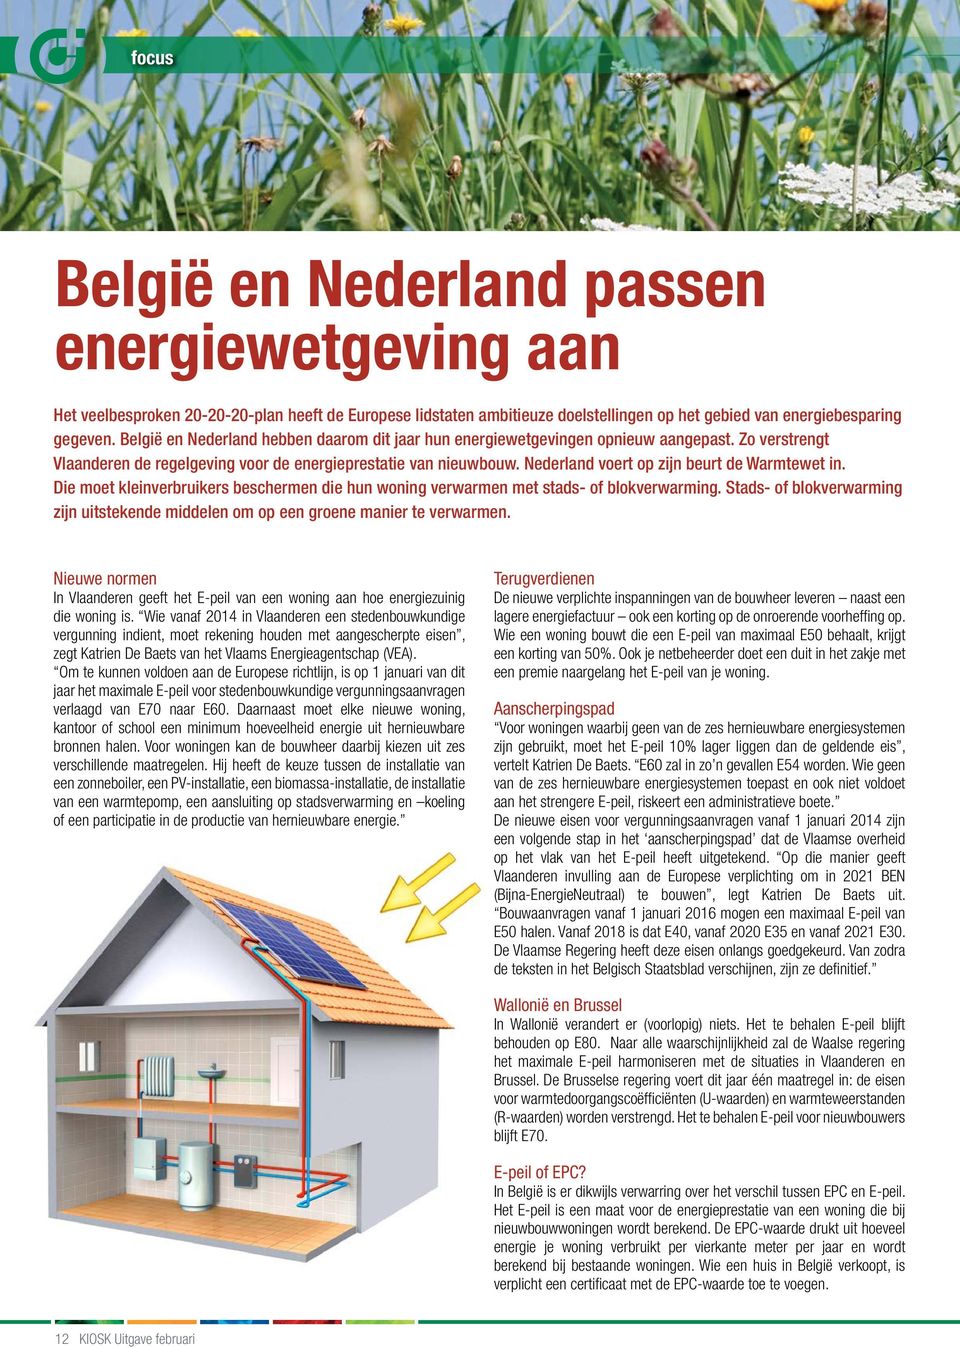 Nederland voert op zijn beurt de Warmtewet in. Die moet kleinverbruikers beschermen die hun woning verwarmen met stads- of blokverwarming.